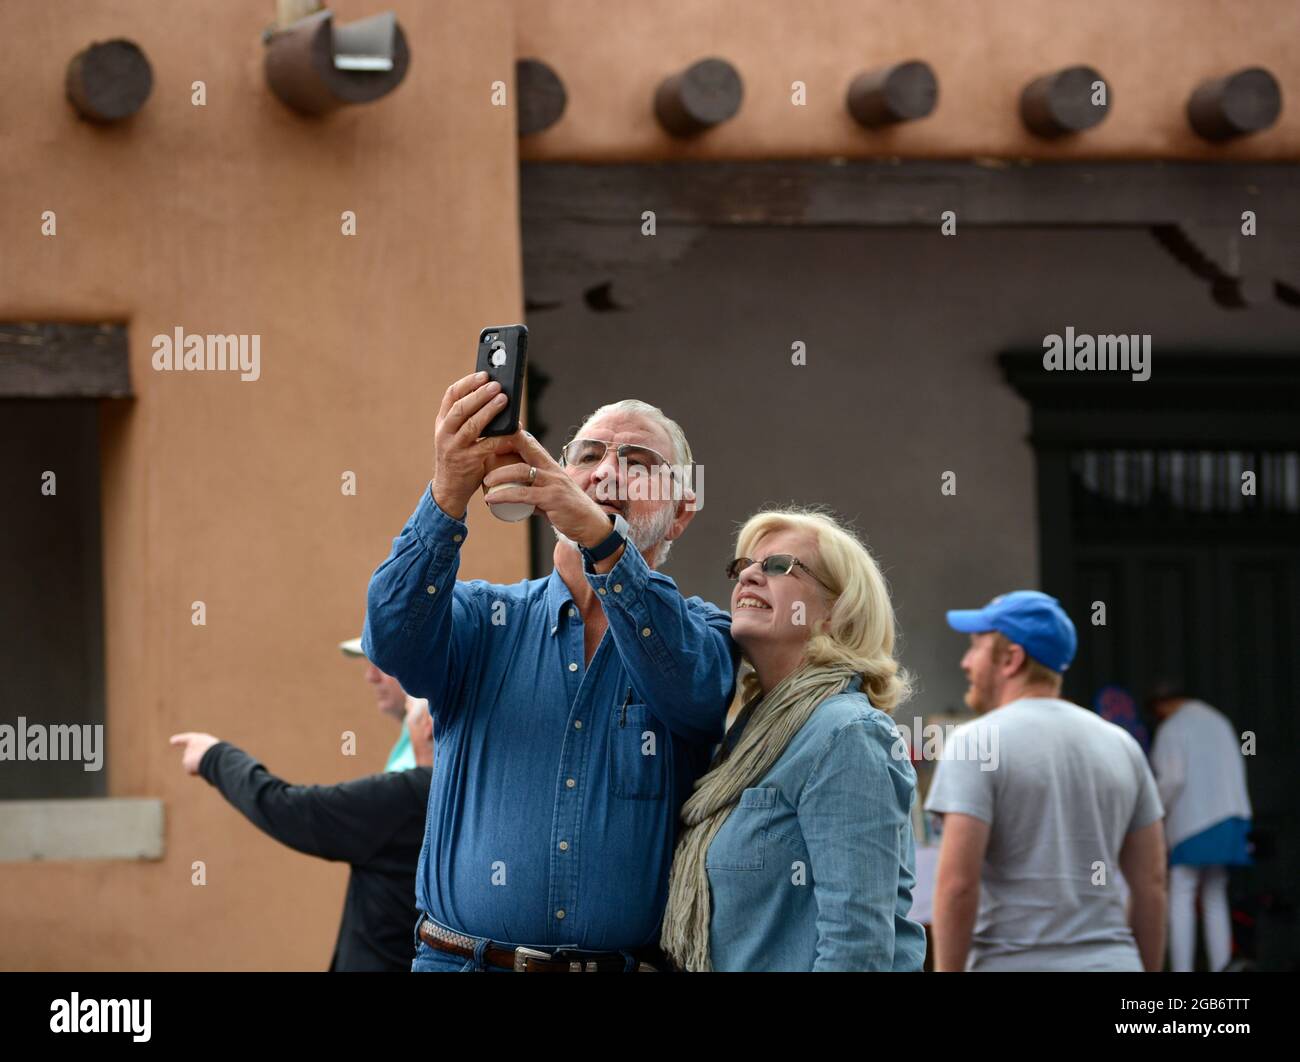 Un couple en visite à Santa Fe, au Nouveau-Mexique, prend un portrait de selfie souvenir. Banque D'Images